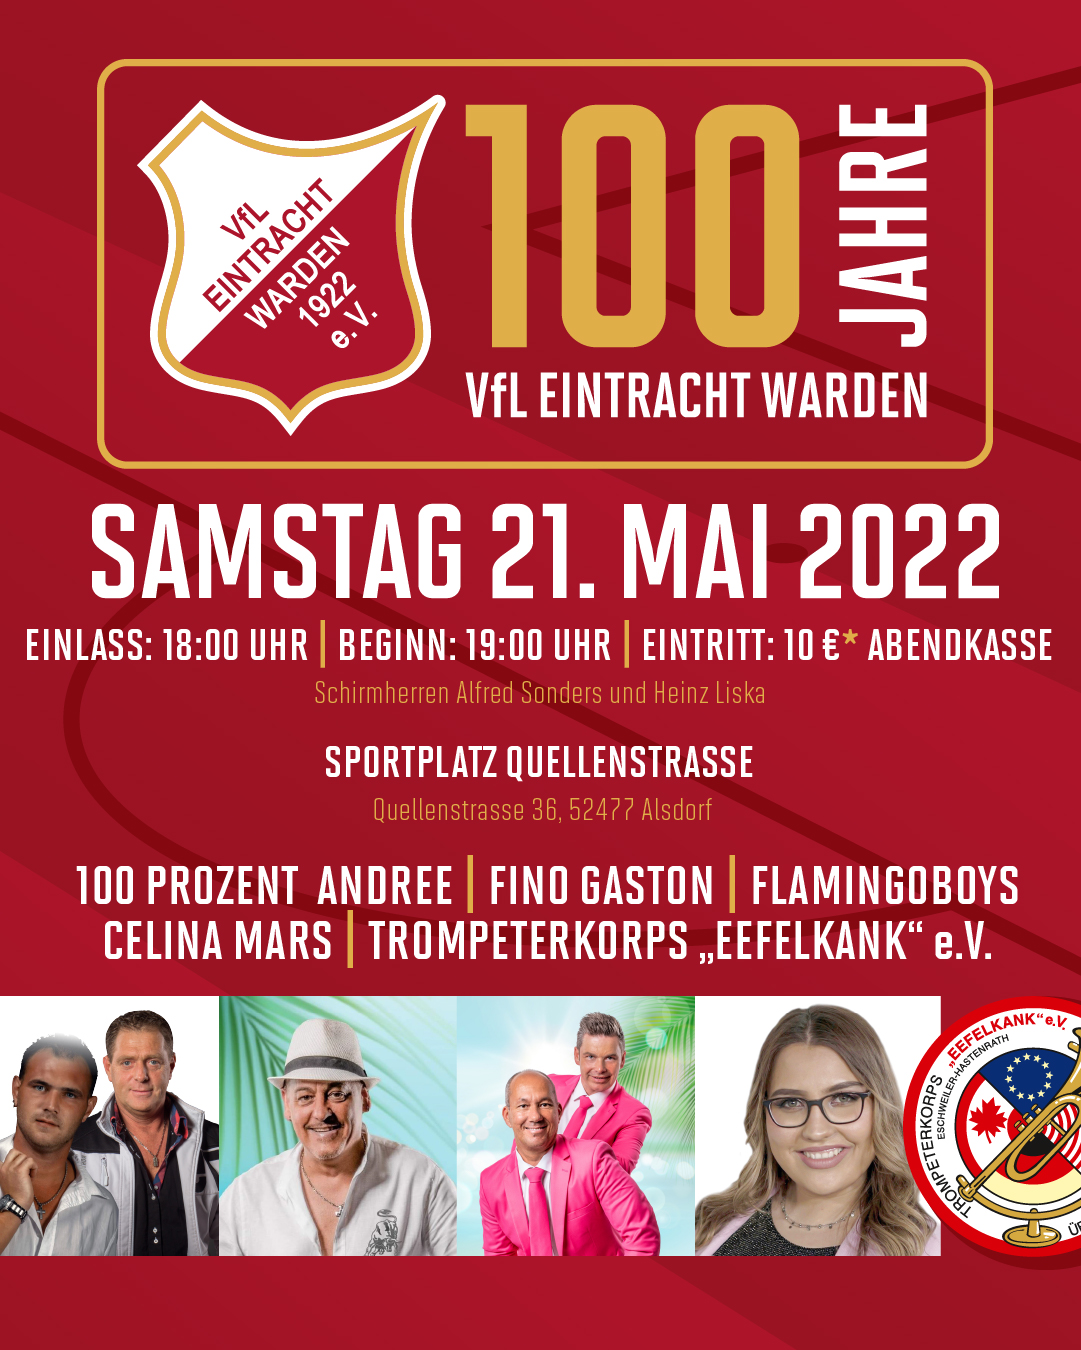 100 jahre Eintracht Warden